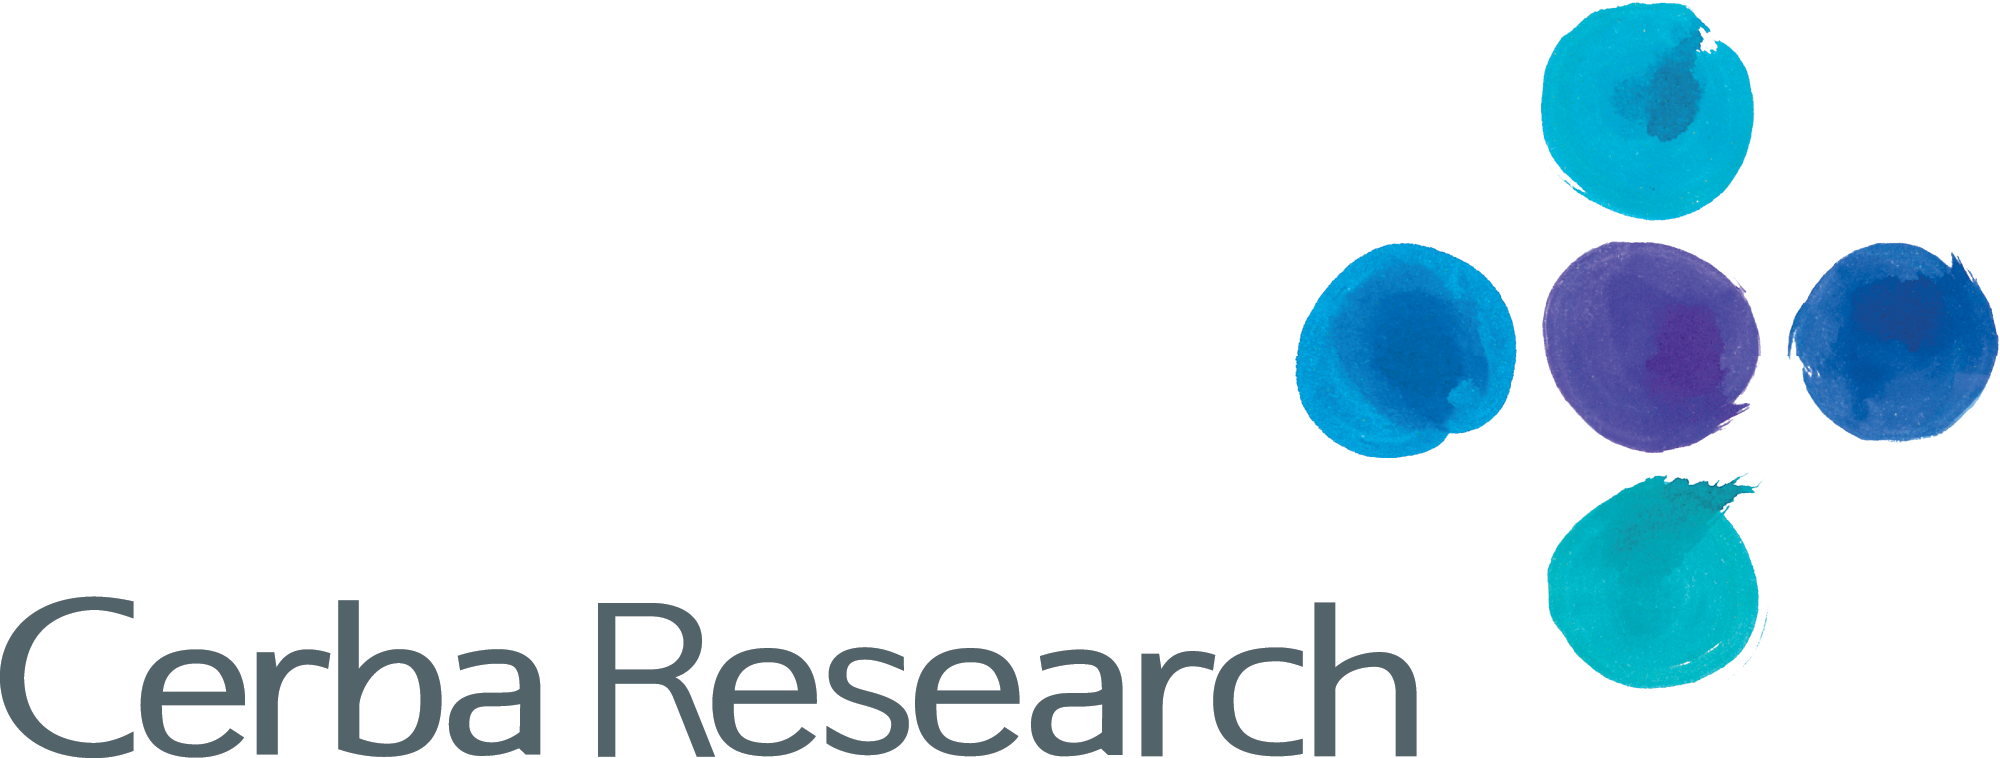 Cerba Research Logo